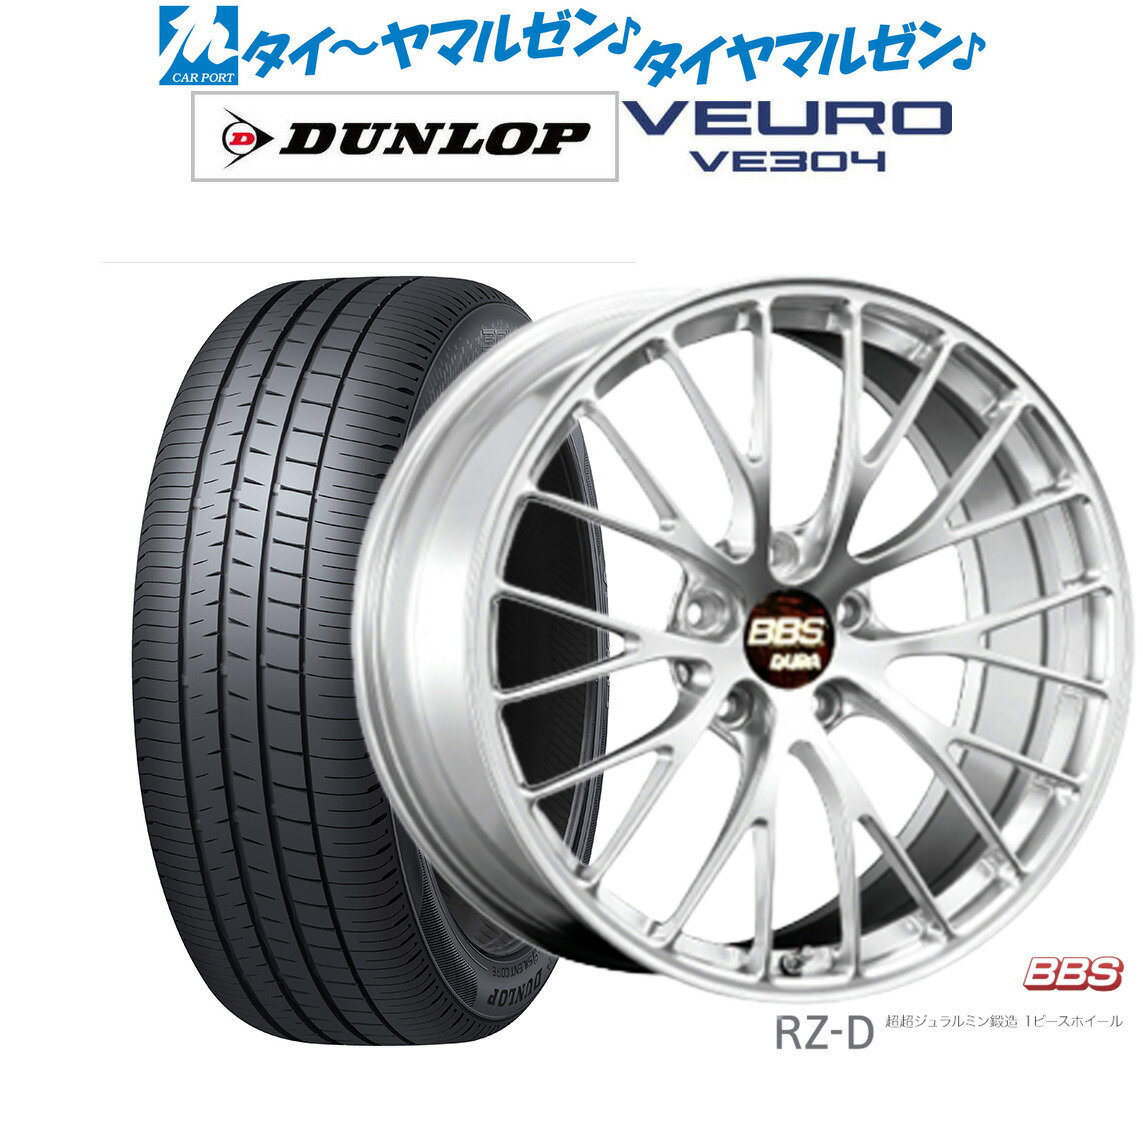 新品 サマータイヤ ホイール4本セットBBS JAPAN RZ-D19インチ 8.5Jダンロップ VEURO ビューロ VE304235/35R19